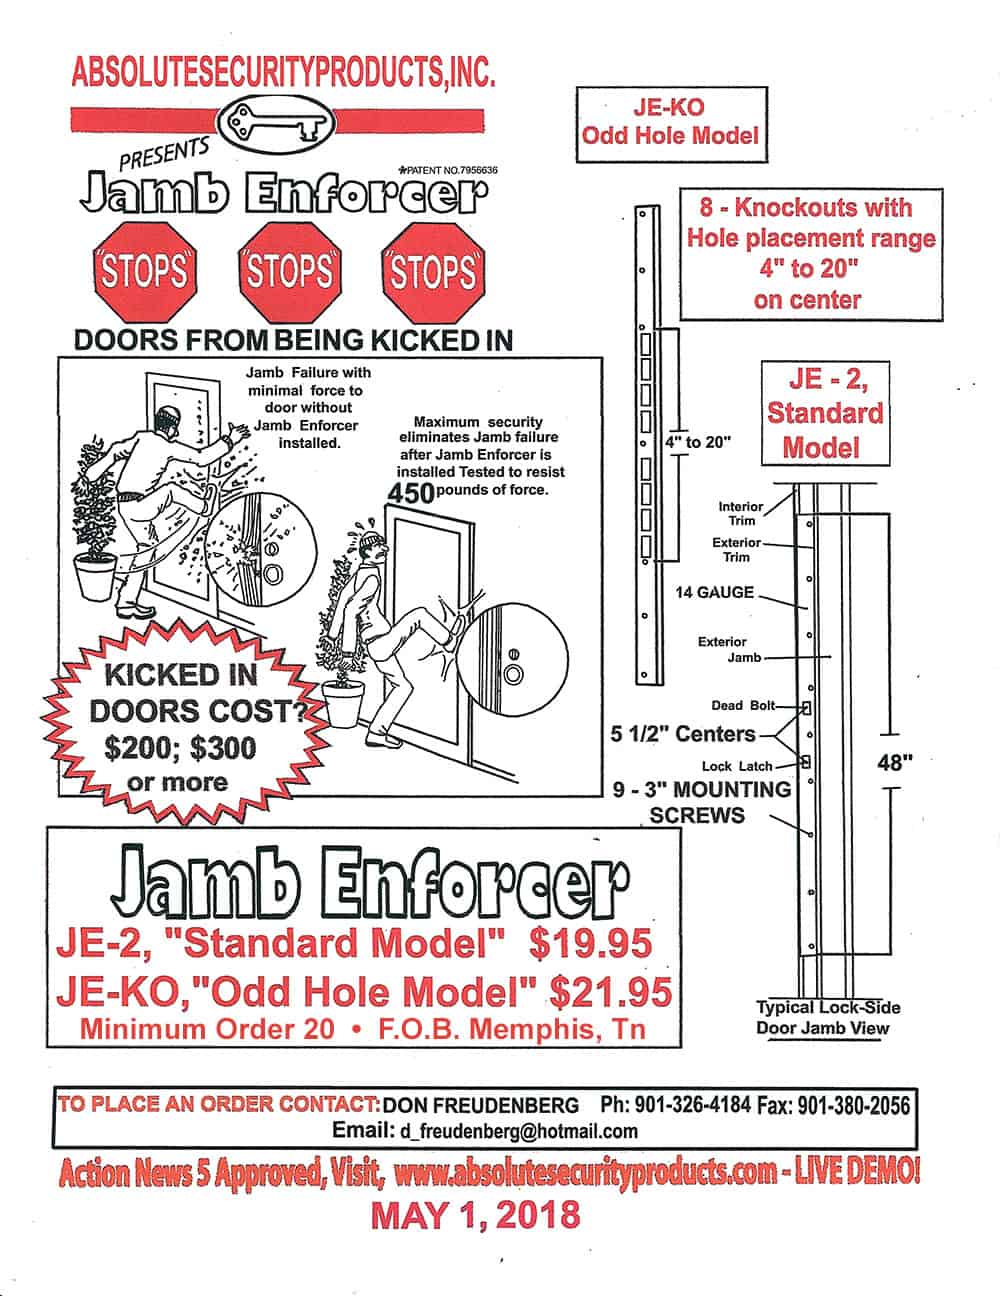 Updated-Jamb-Enforcer-Product-Description-